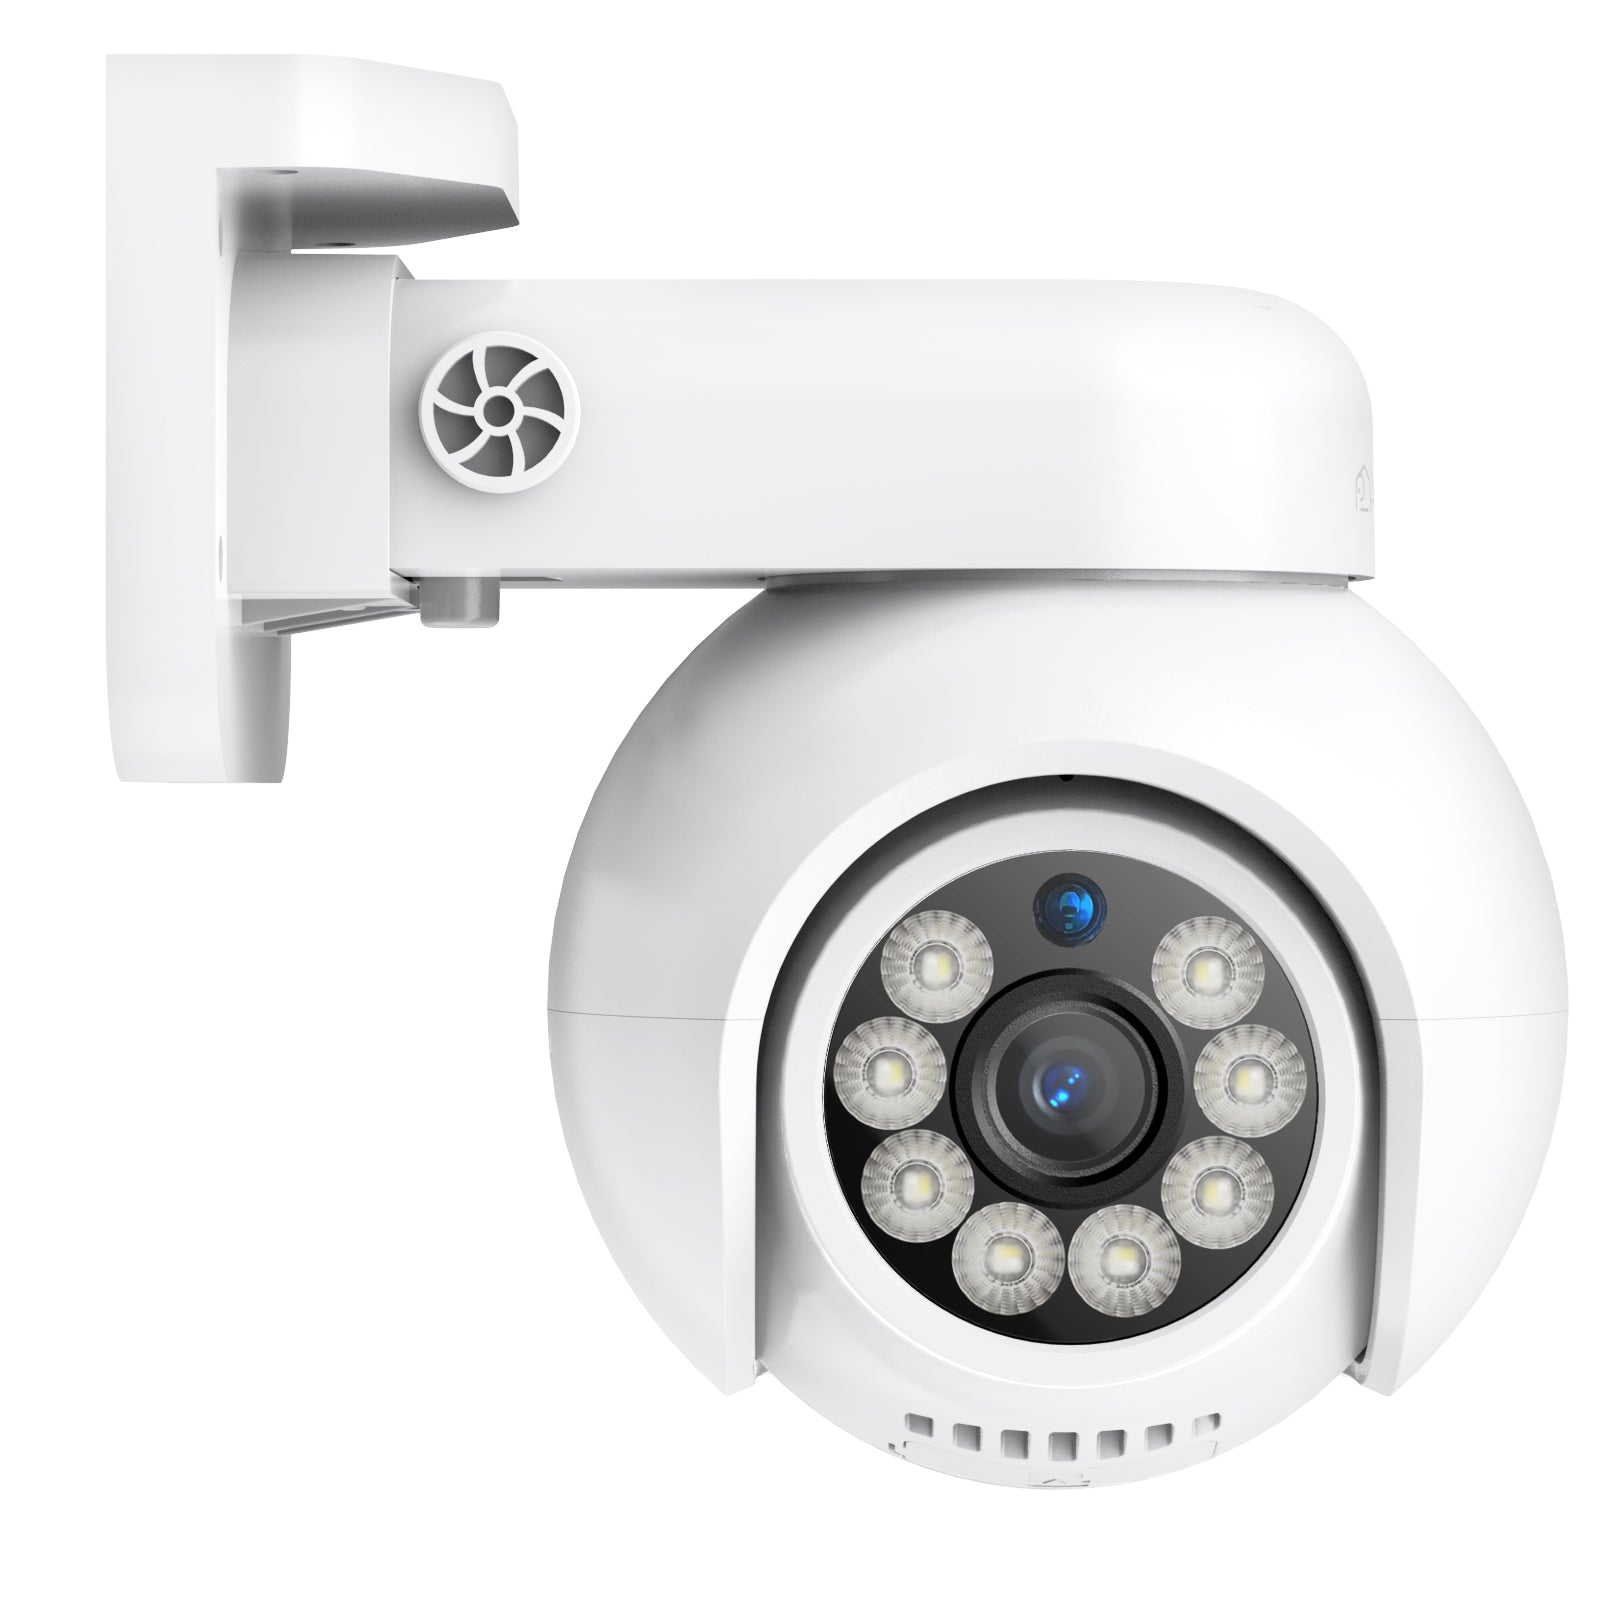 Mini Caméra de Surveillance WIFI 4K, Vision Nocturne & Détection